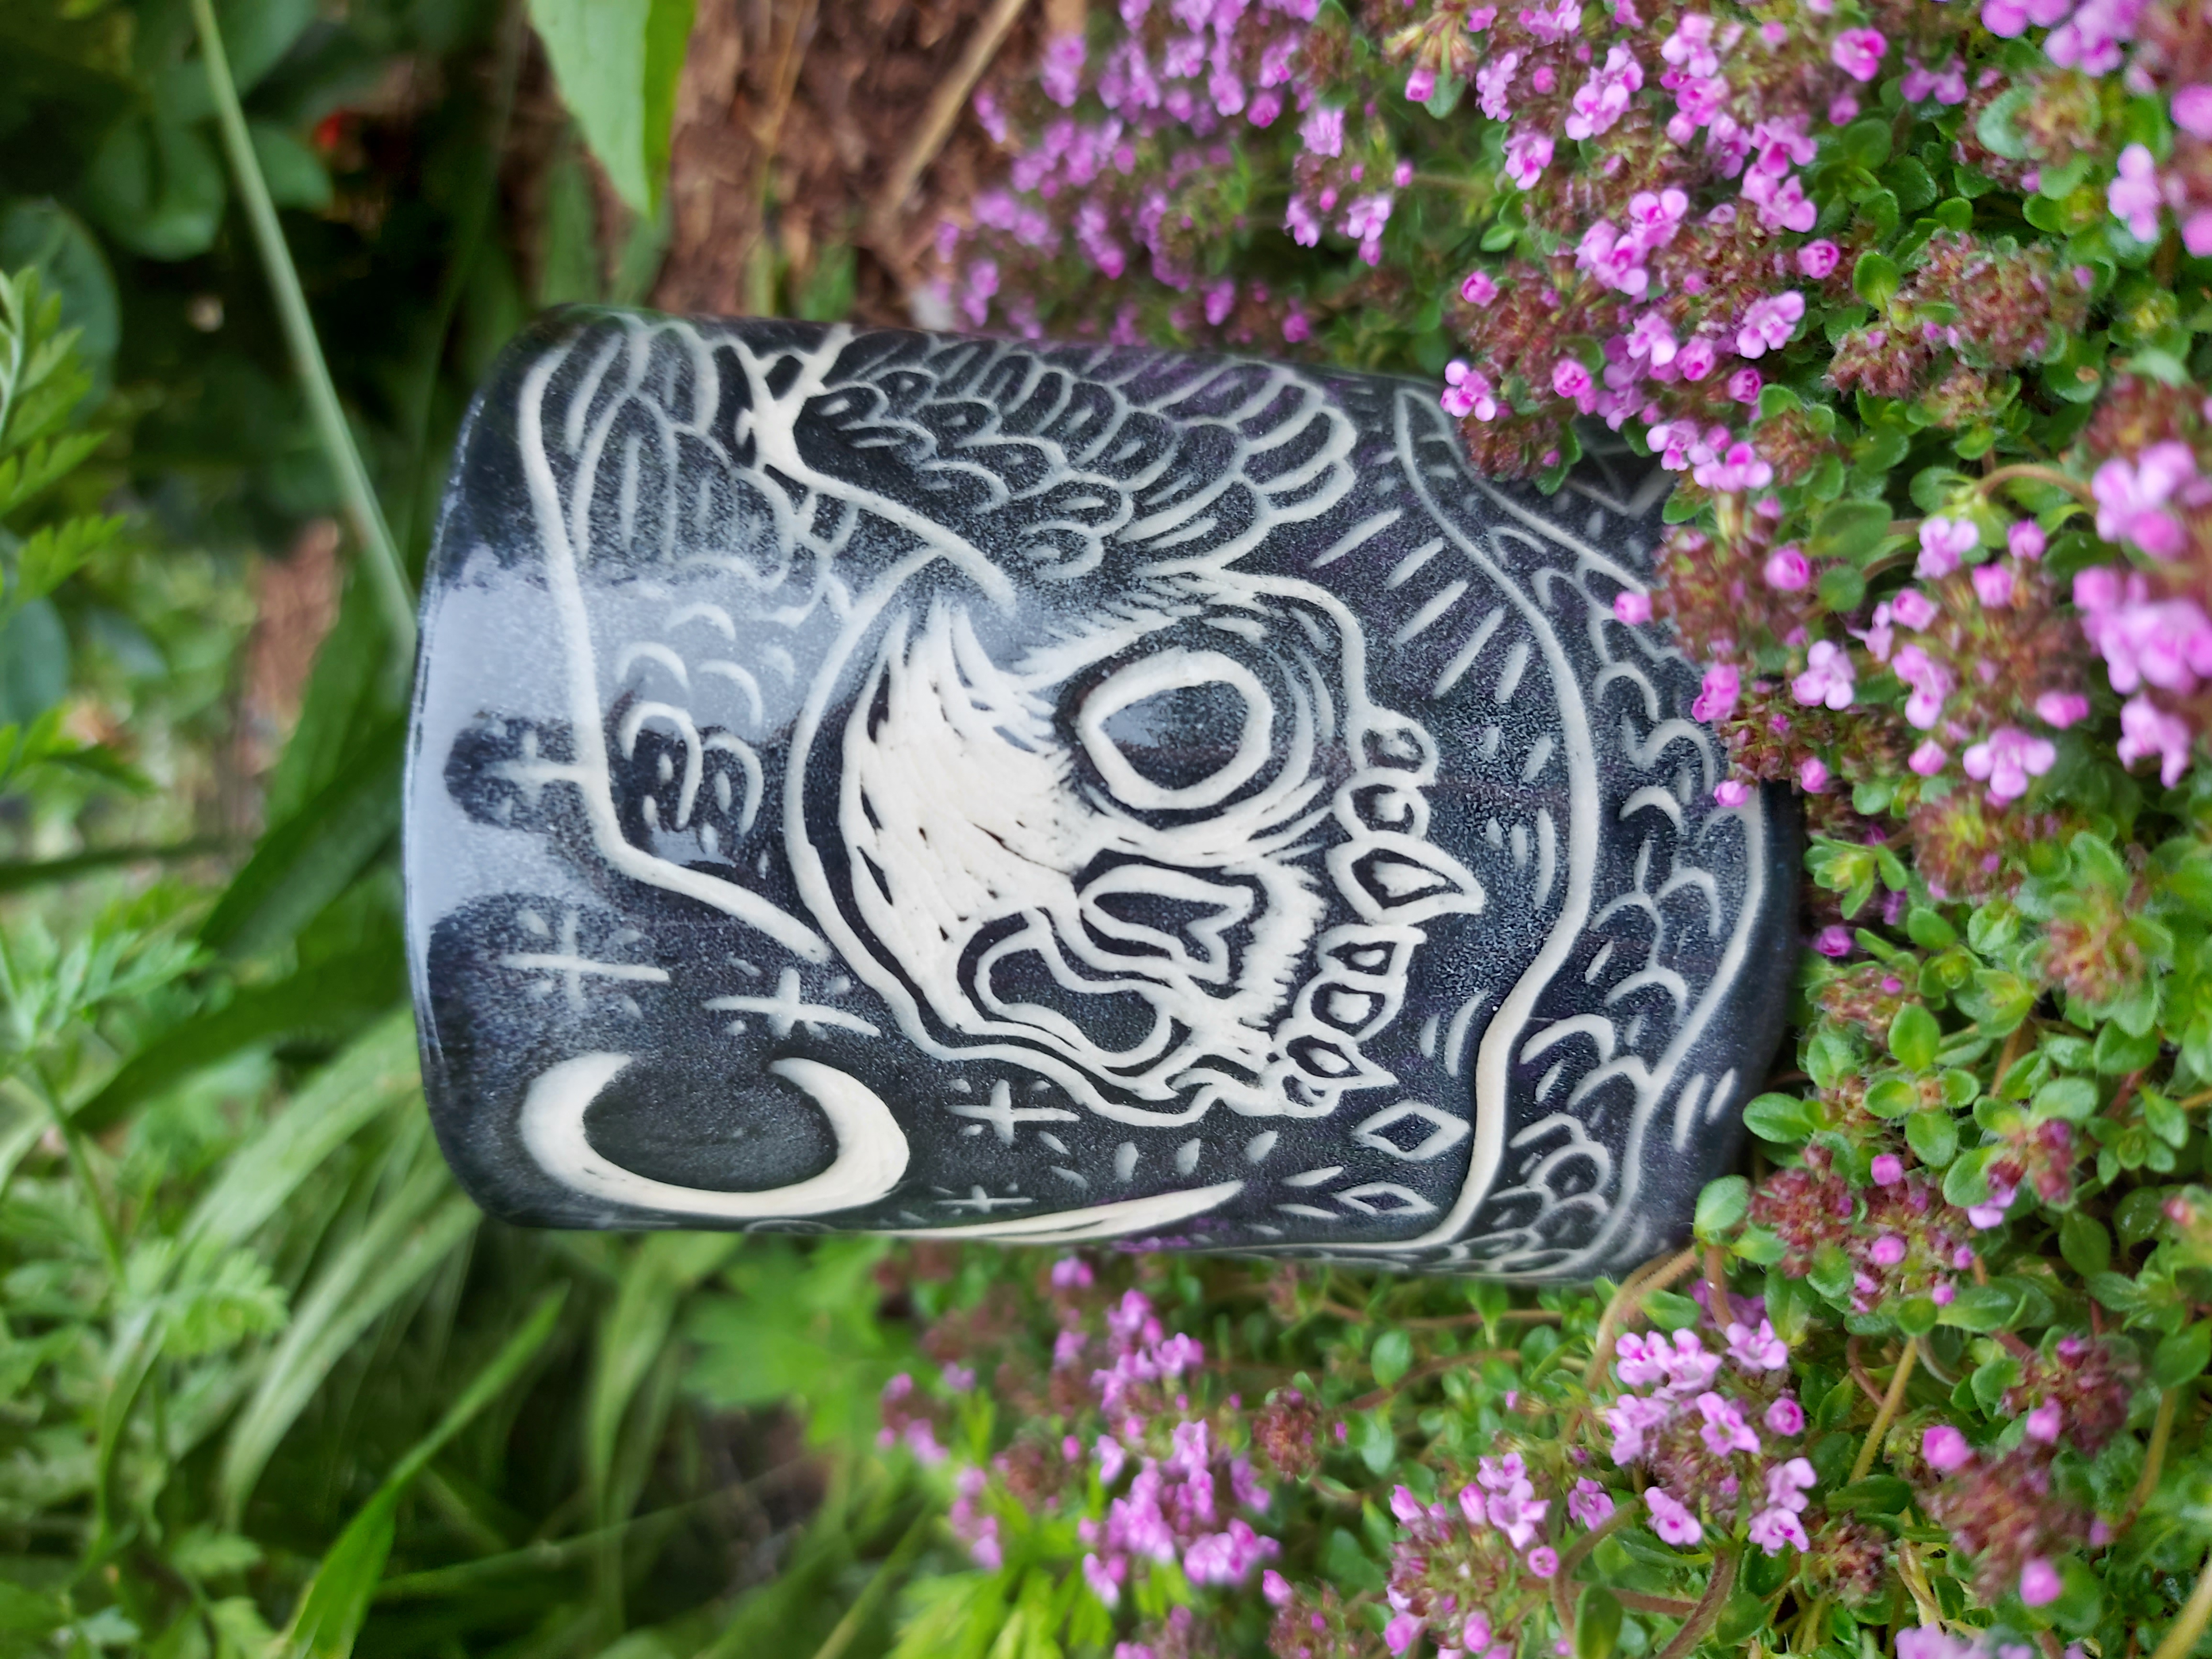 Ceramic cup with skull scrafito